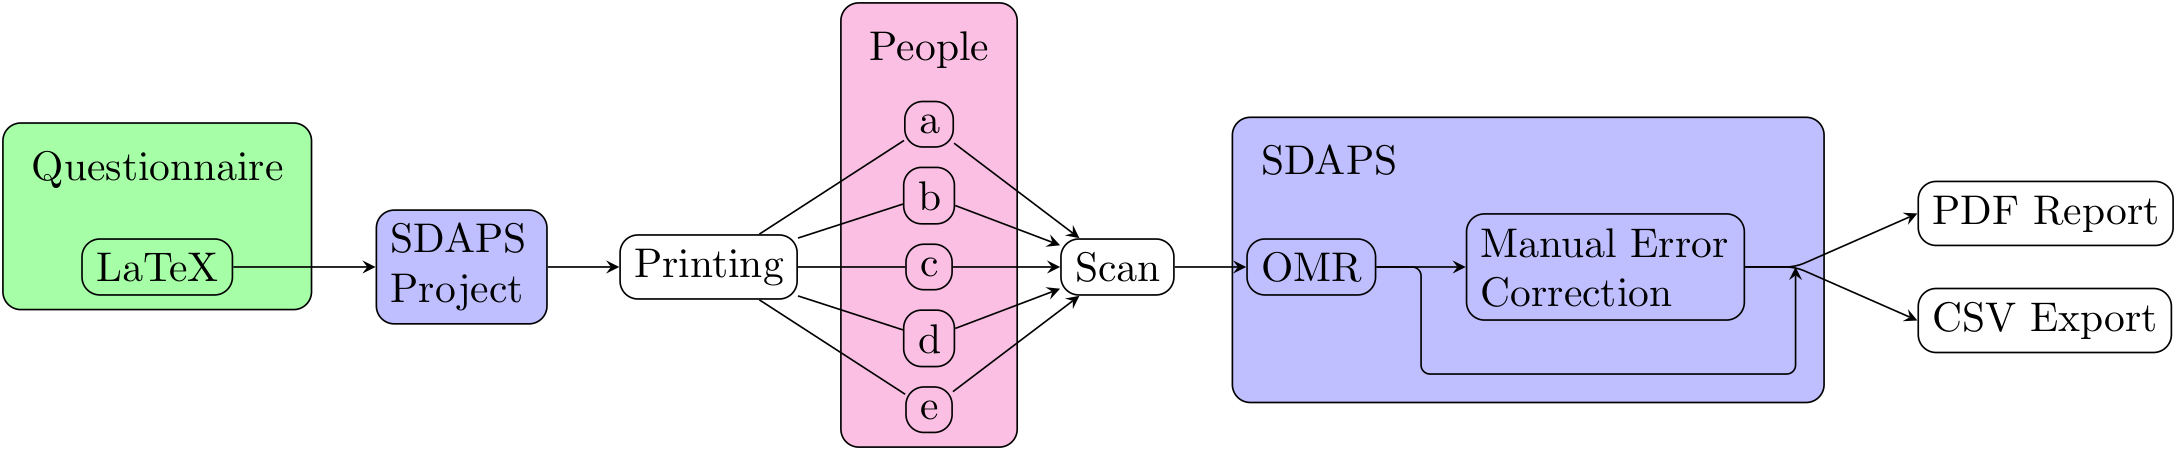 SDAPS workflow